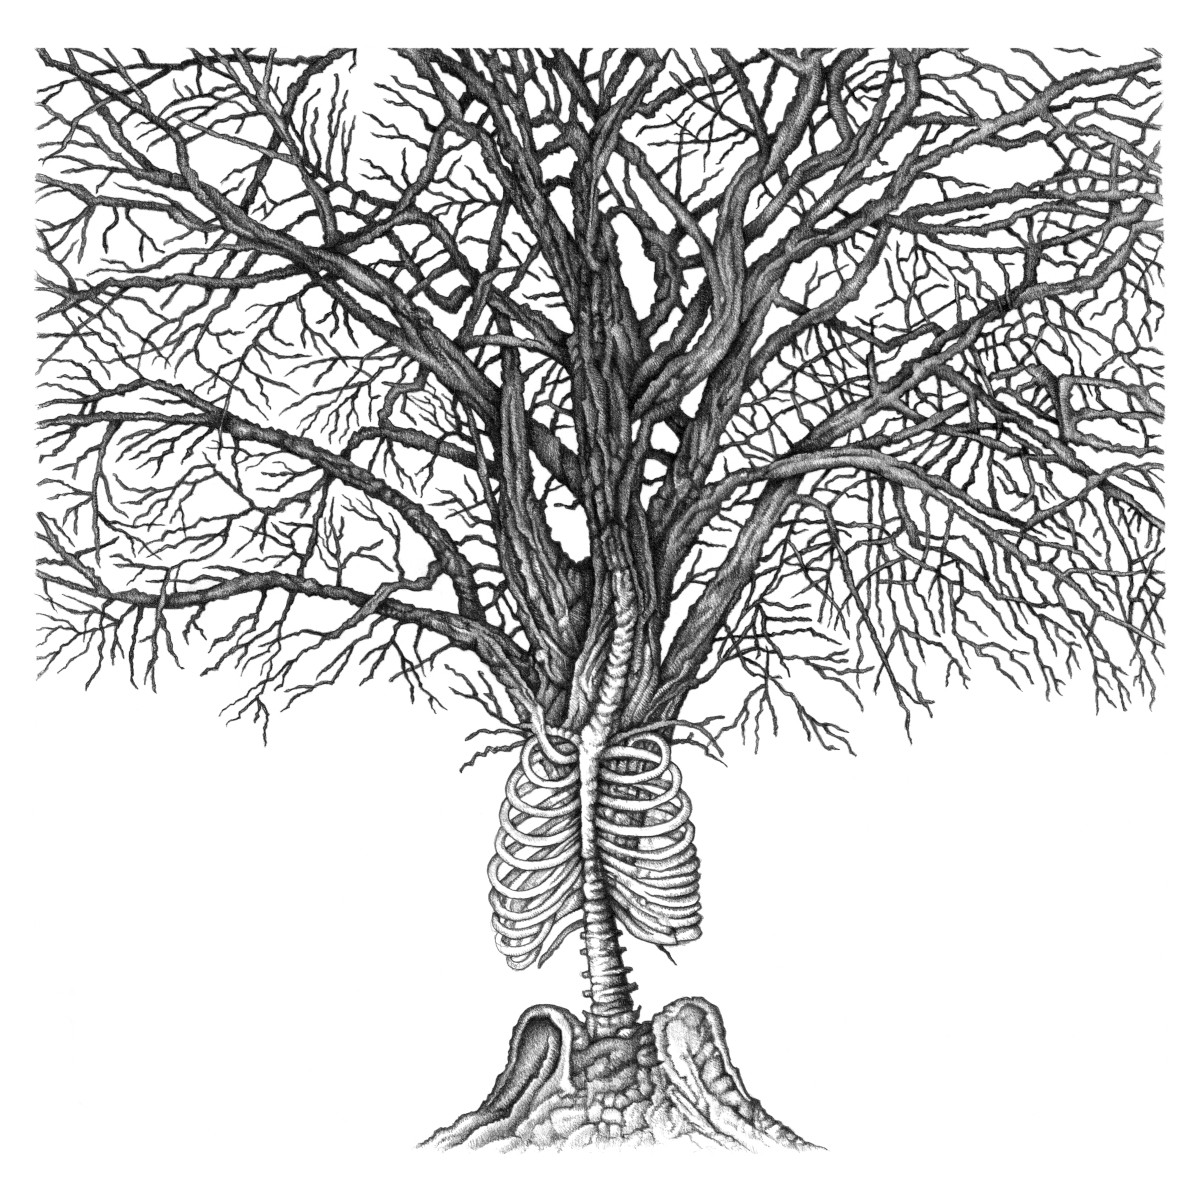 Vertebral Tree (2022)